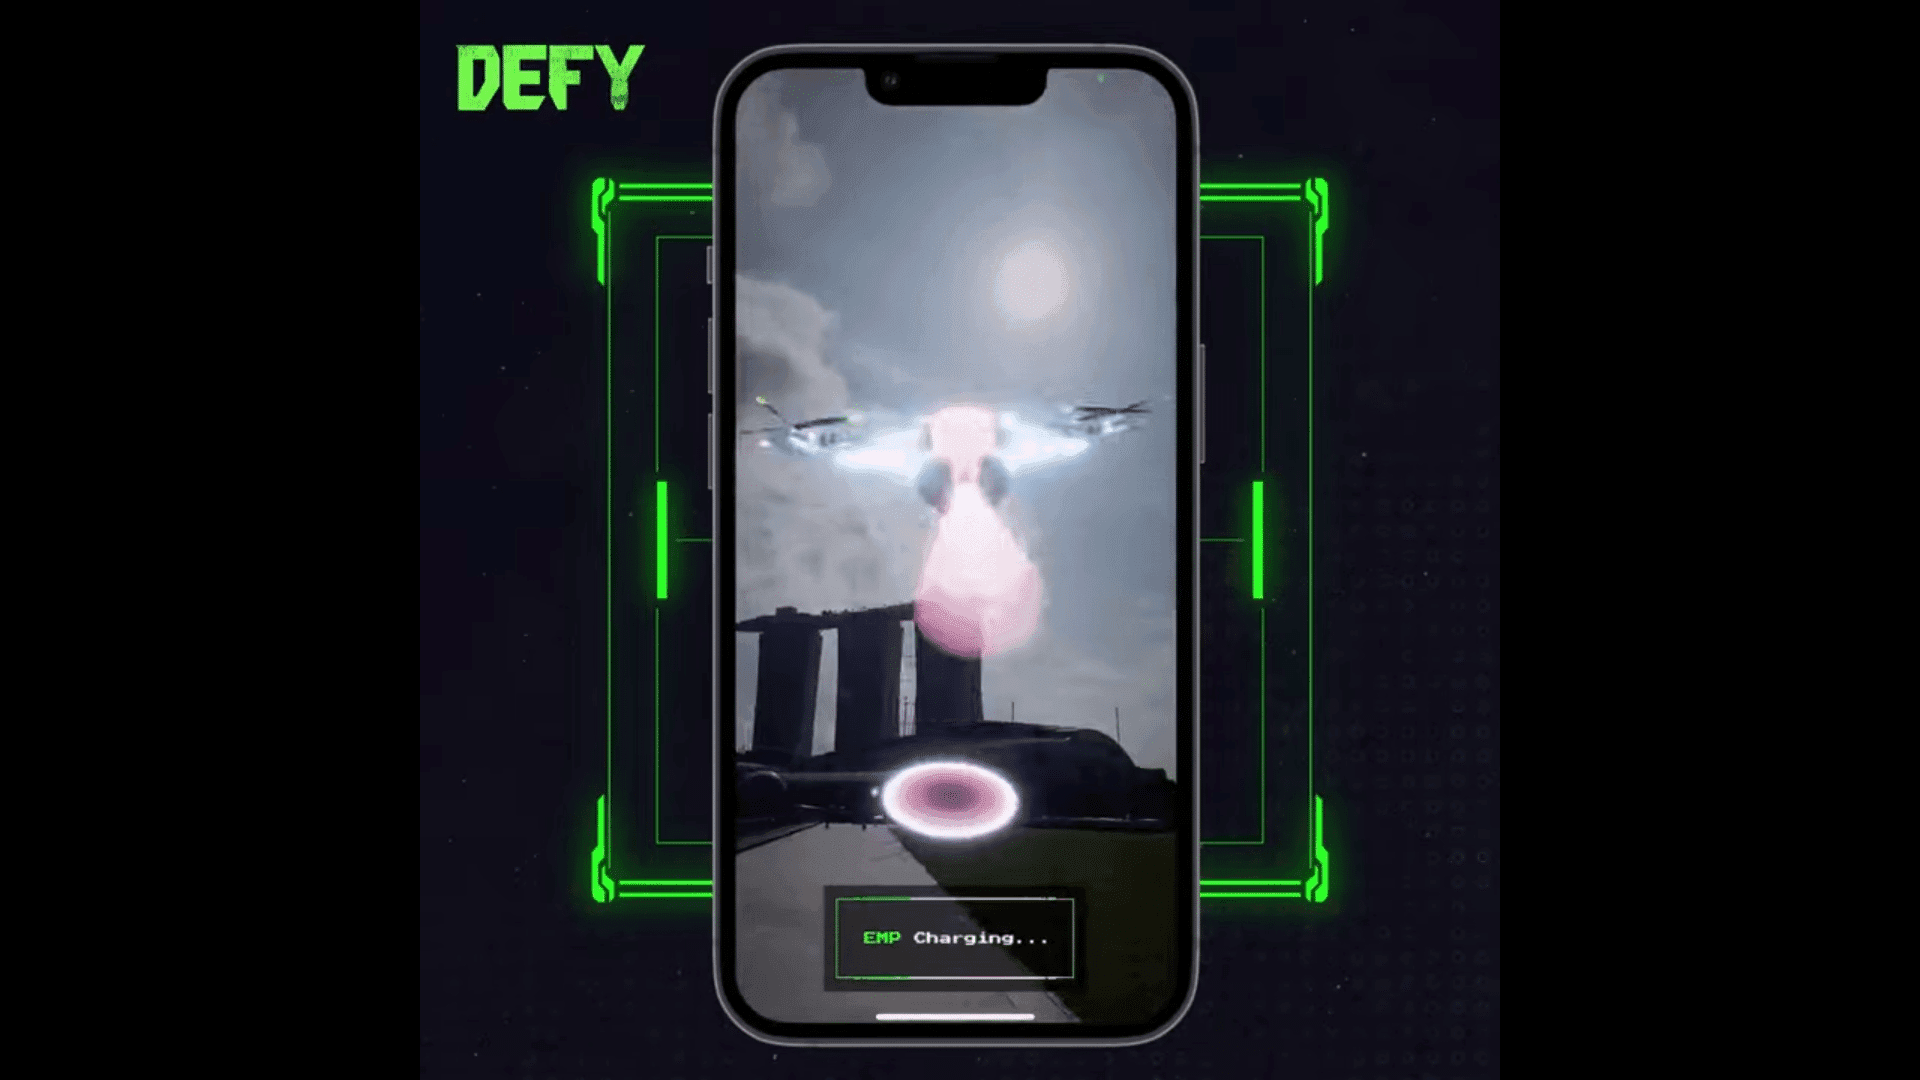 DEFY, sürükleyici bir metaverse deneyimi sağlamak için sanal ve fiziksel dünyaların unsurlarını birleştiren, kazanmaya yönelik bir mobil oyundur.